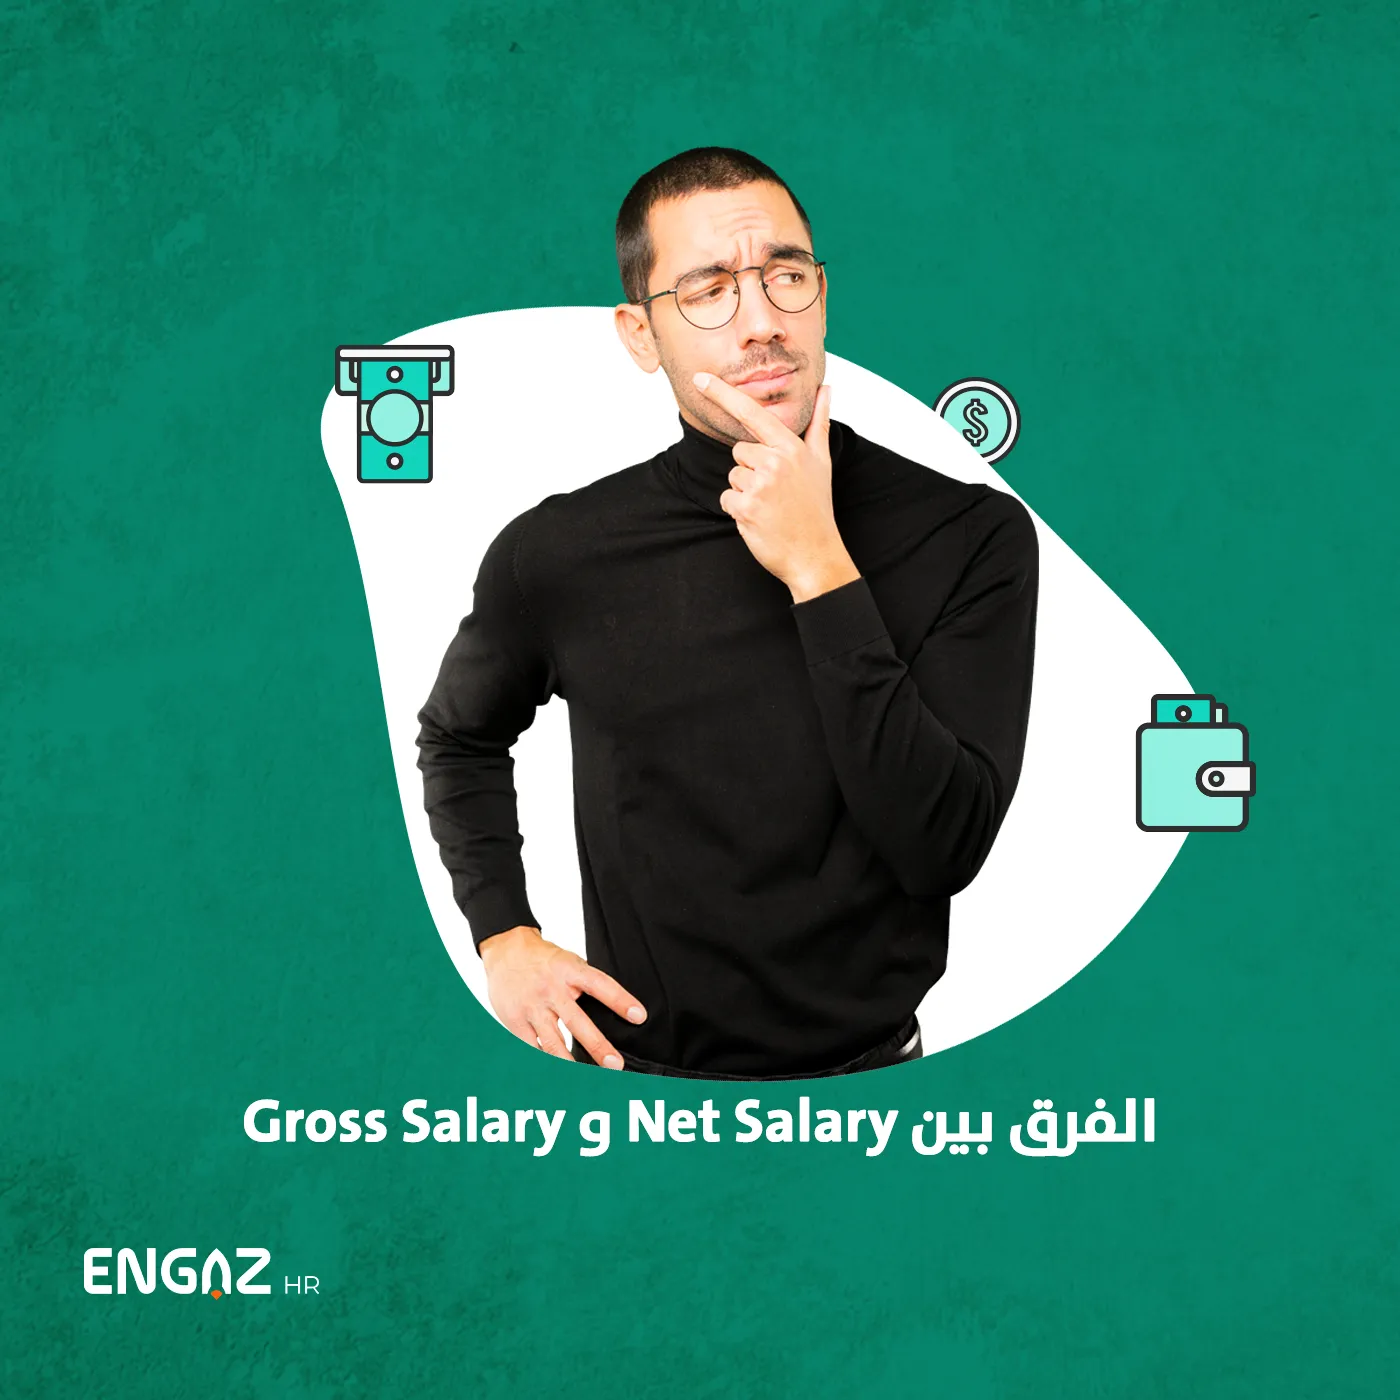 الفرق بين net salary و gross salary